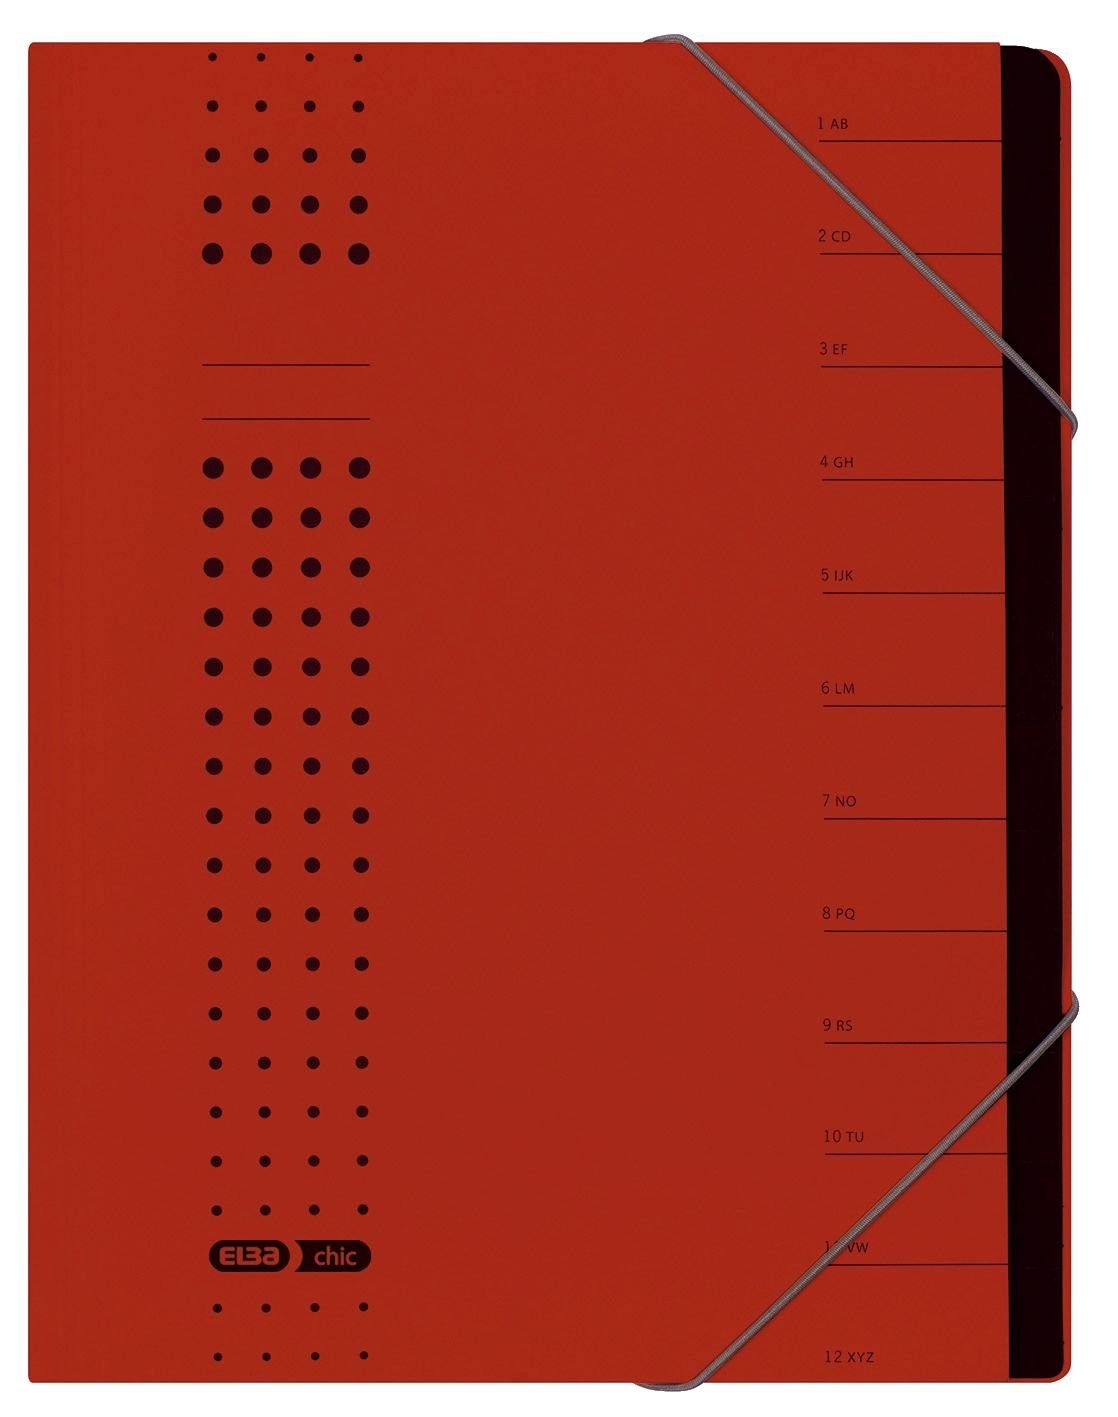 ELBA ELBA Karton chic-Ordnungsmappe, rot, 1-12, Fächer Schreibmappe A4